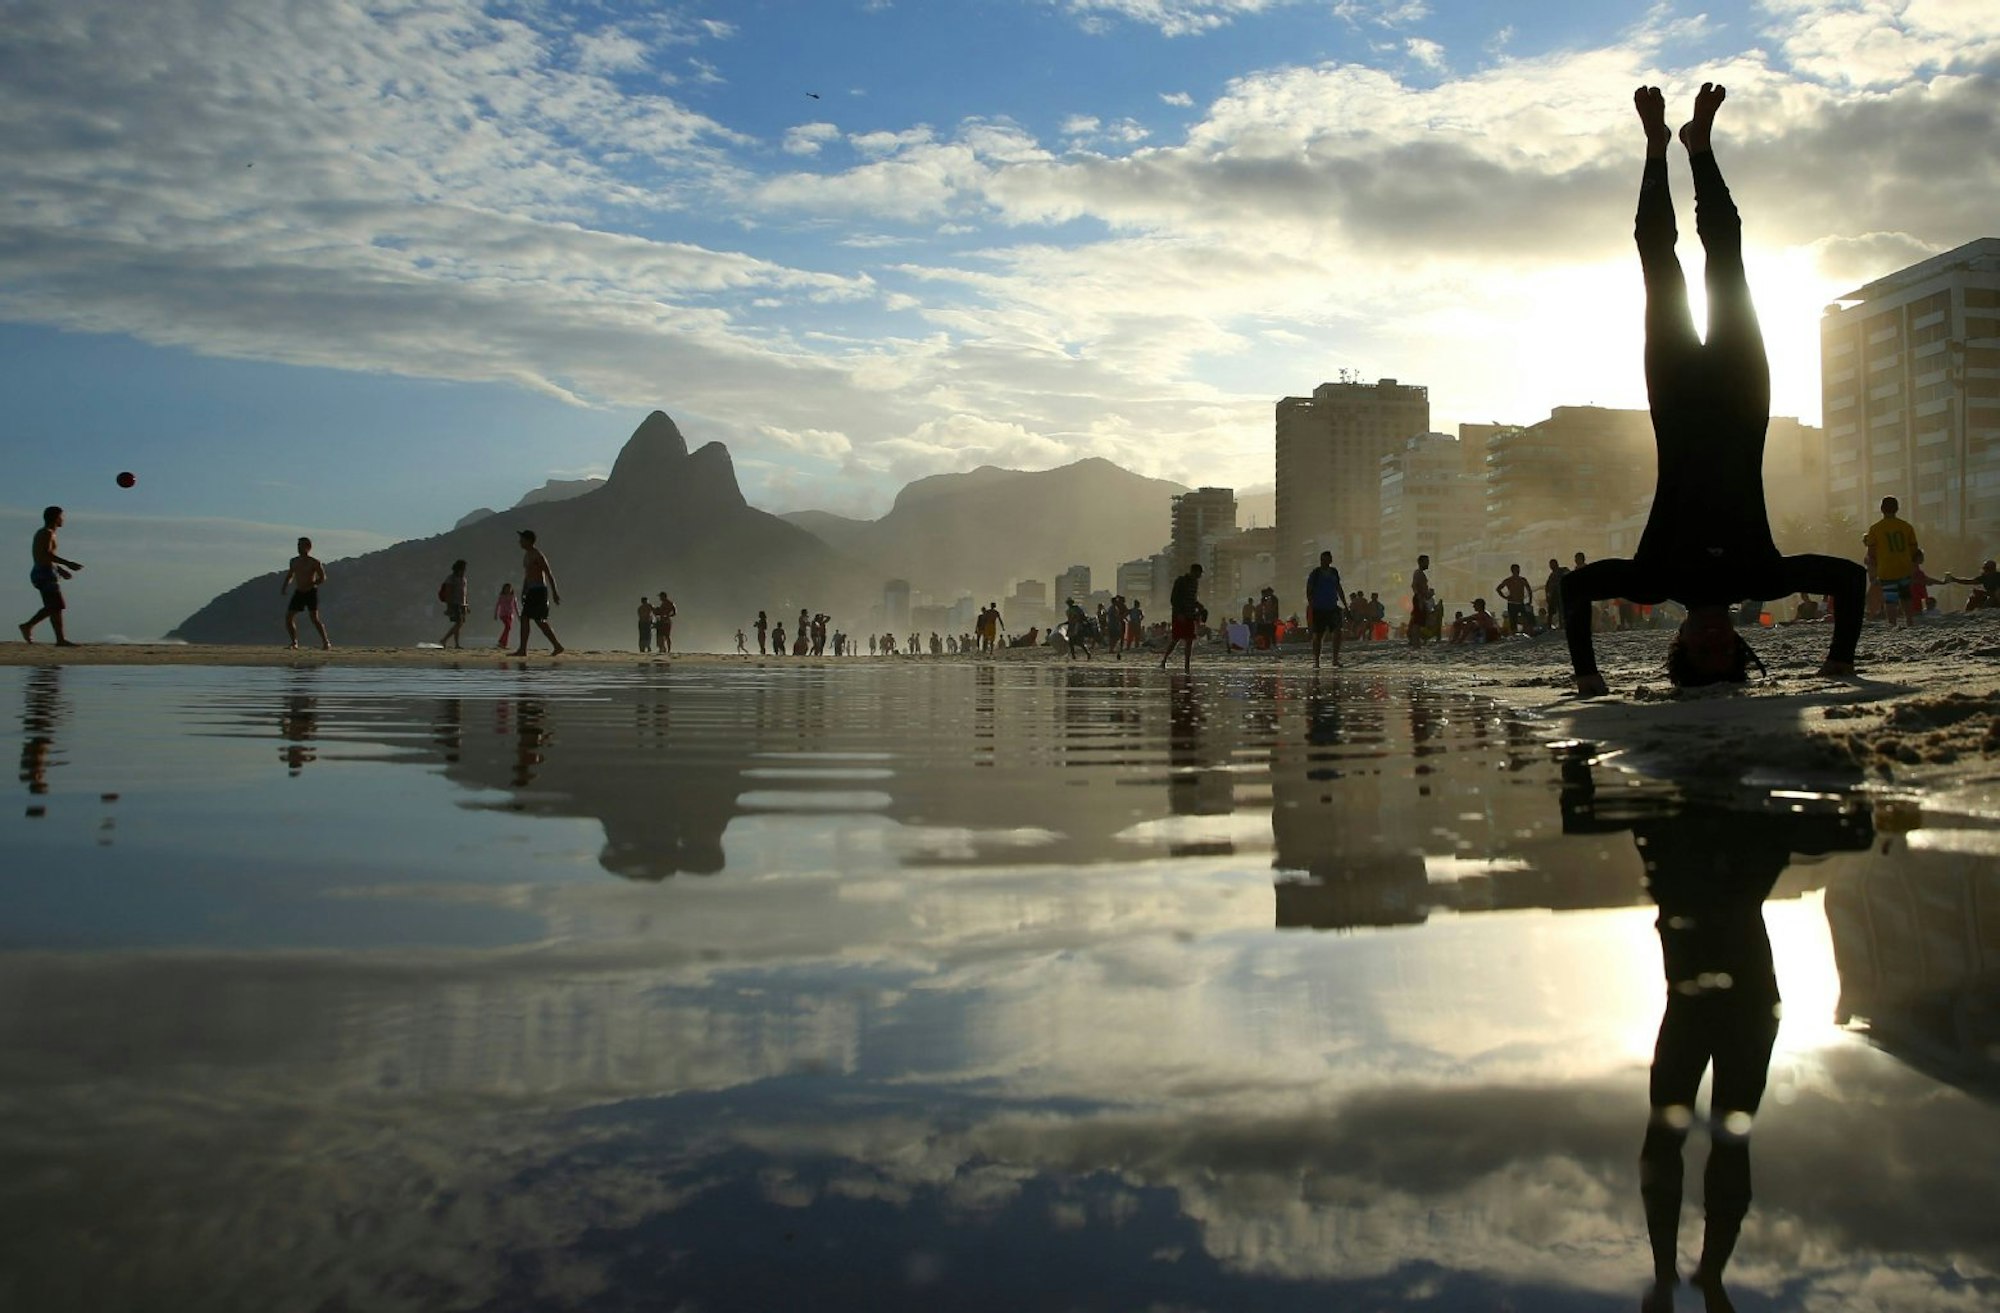 Die Perspektive wechseln: Das geht, wenn man sich auf ein unbekanntes Reiseziel einlässt – oder einen Kopfstand macht, wie hier am Strand von Ipanema, Rio de Janeiro, Brasilien.